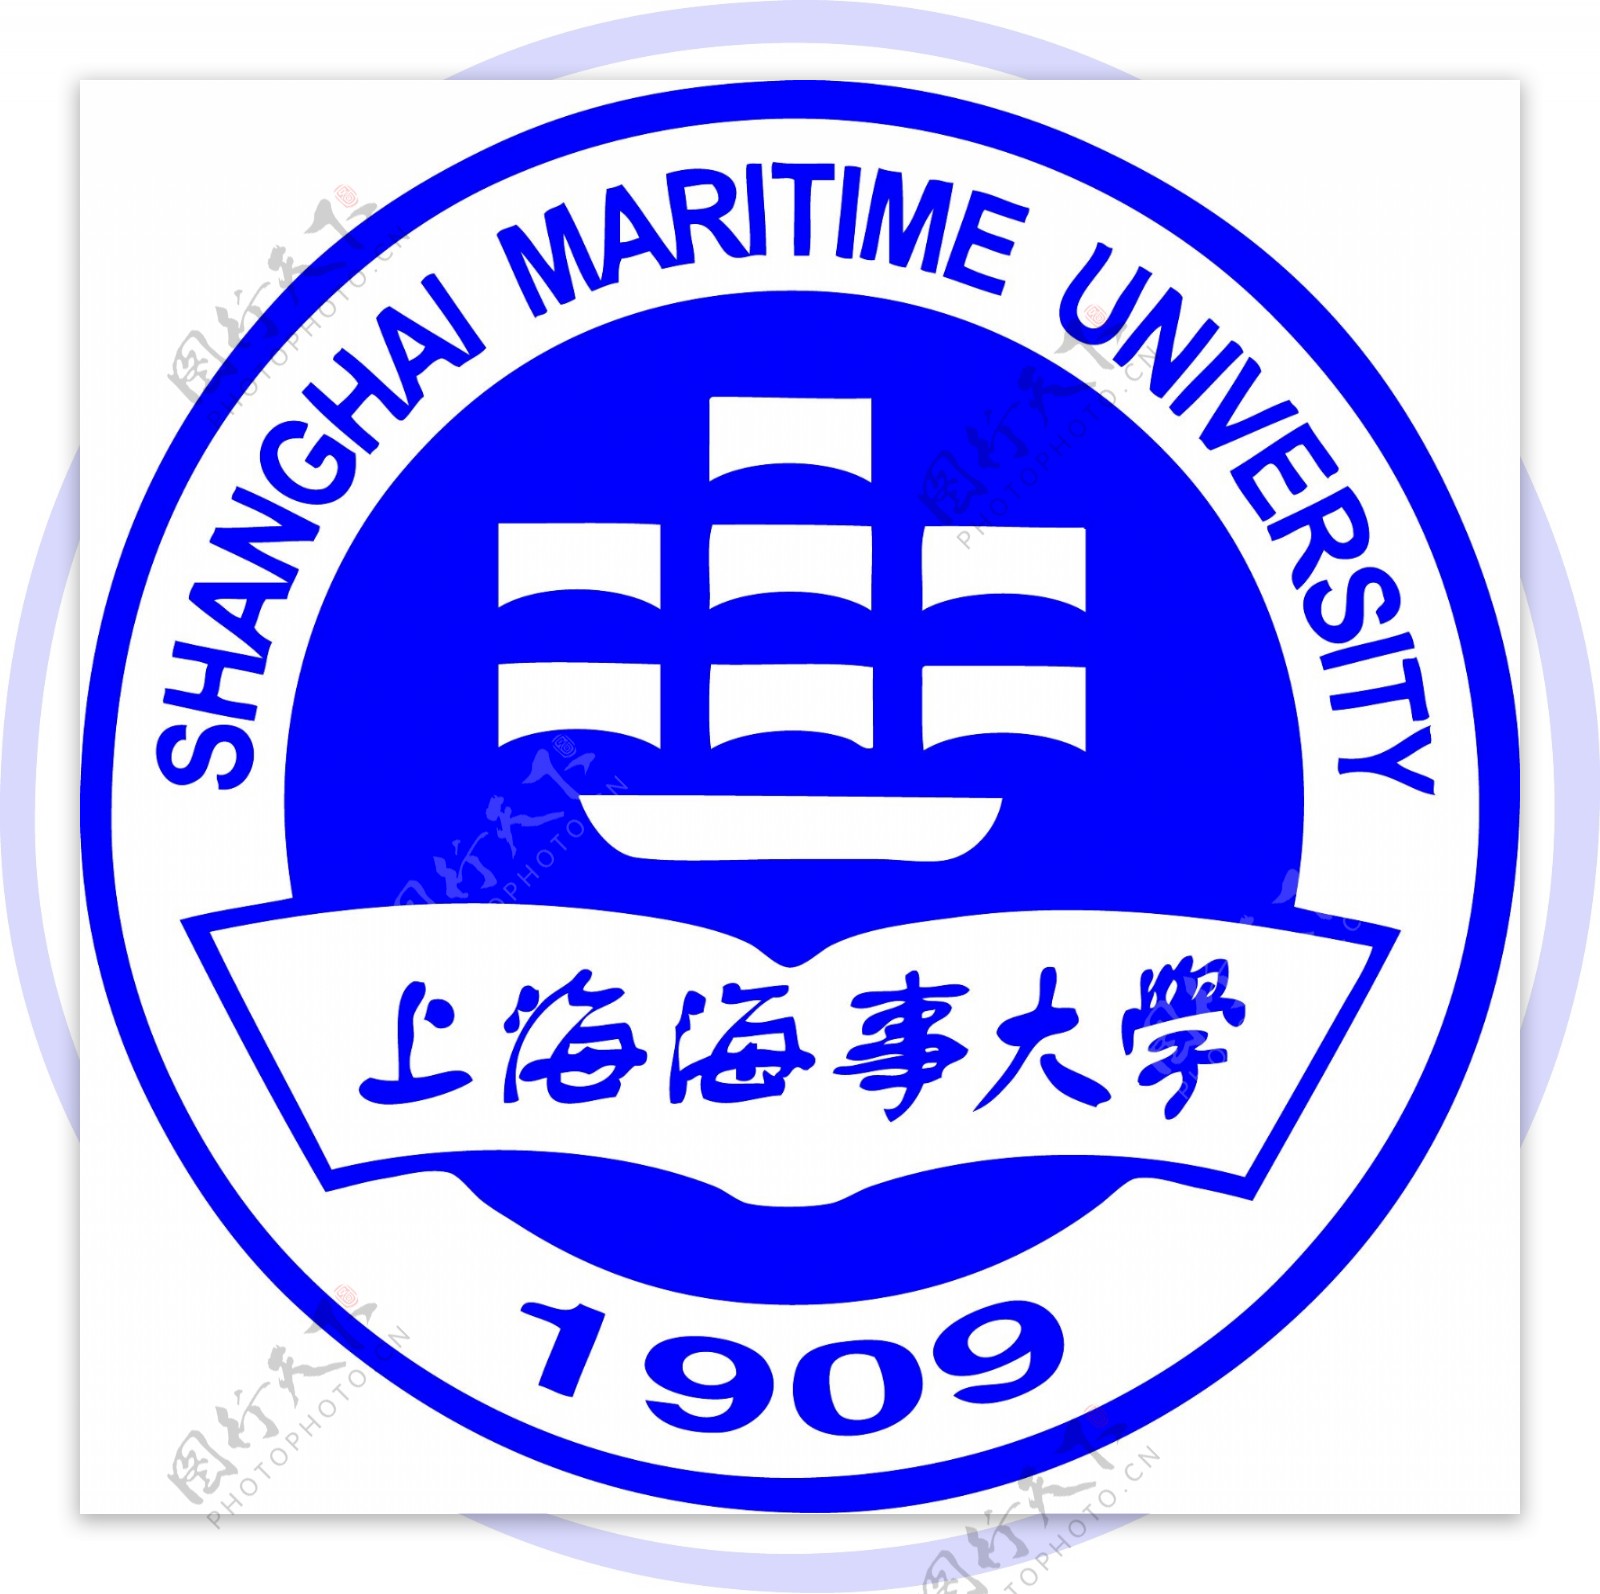 上海海事大学校徽图片